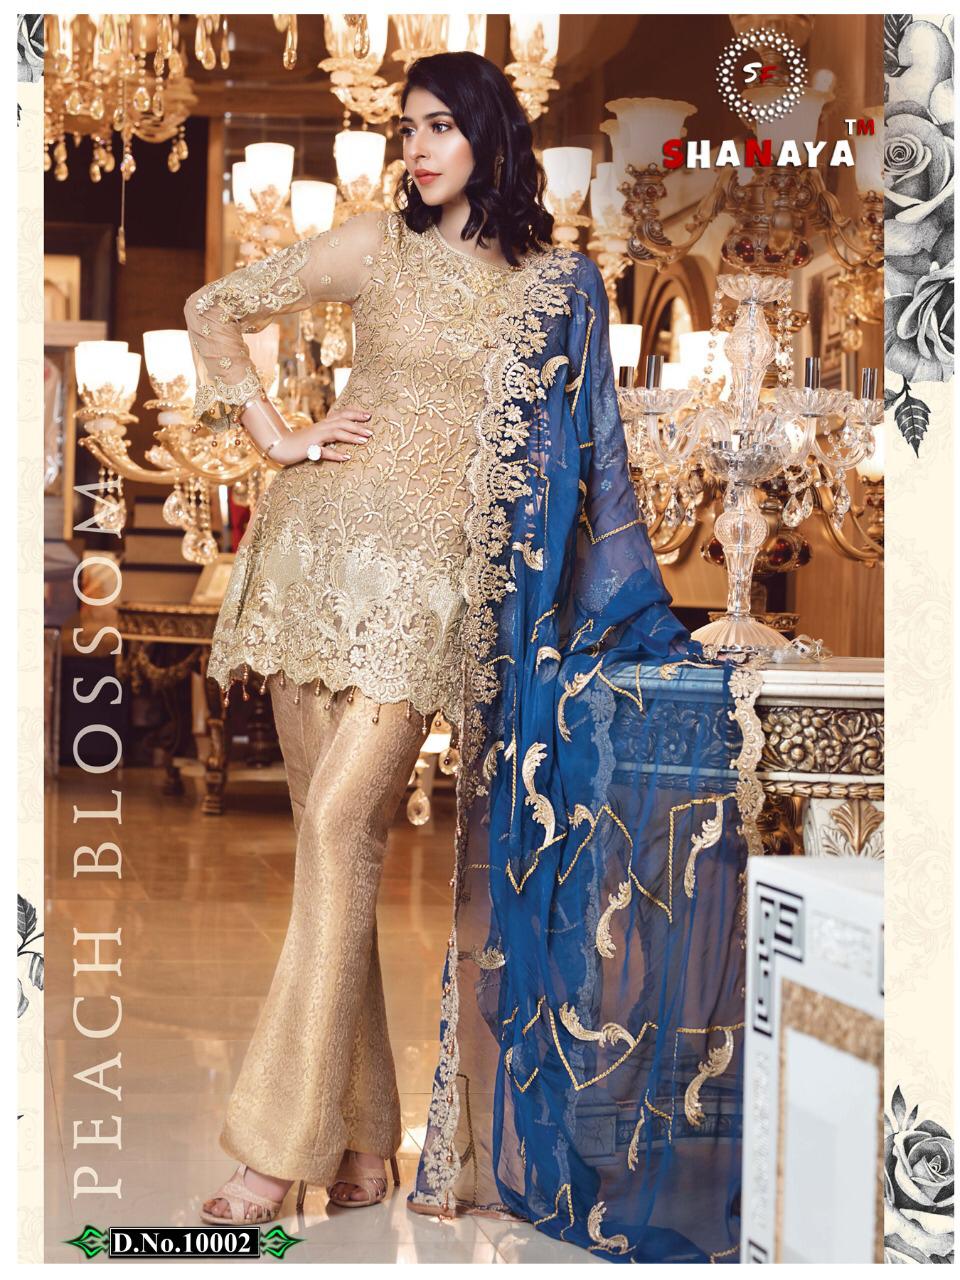 Shanaya Fashion Rose Blossom 10002